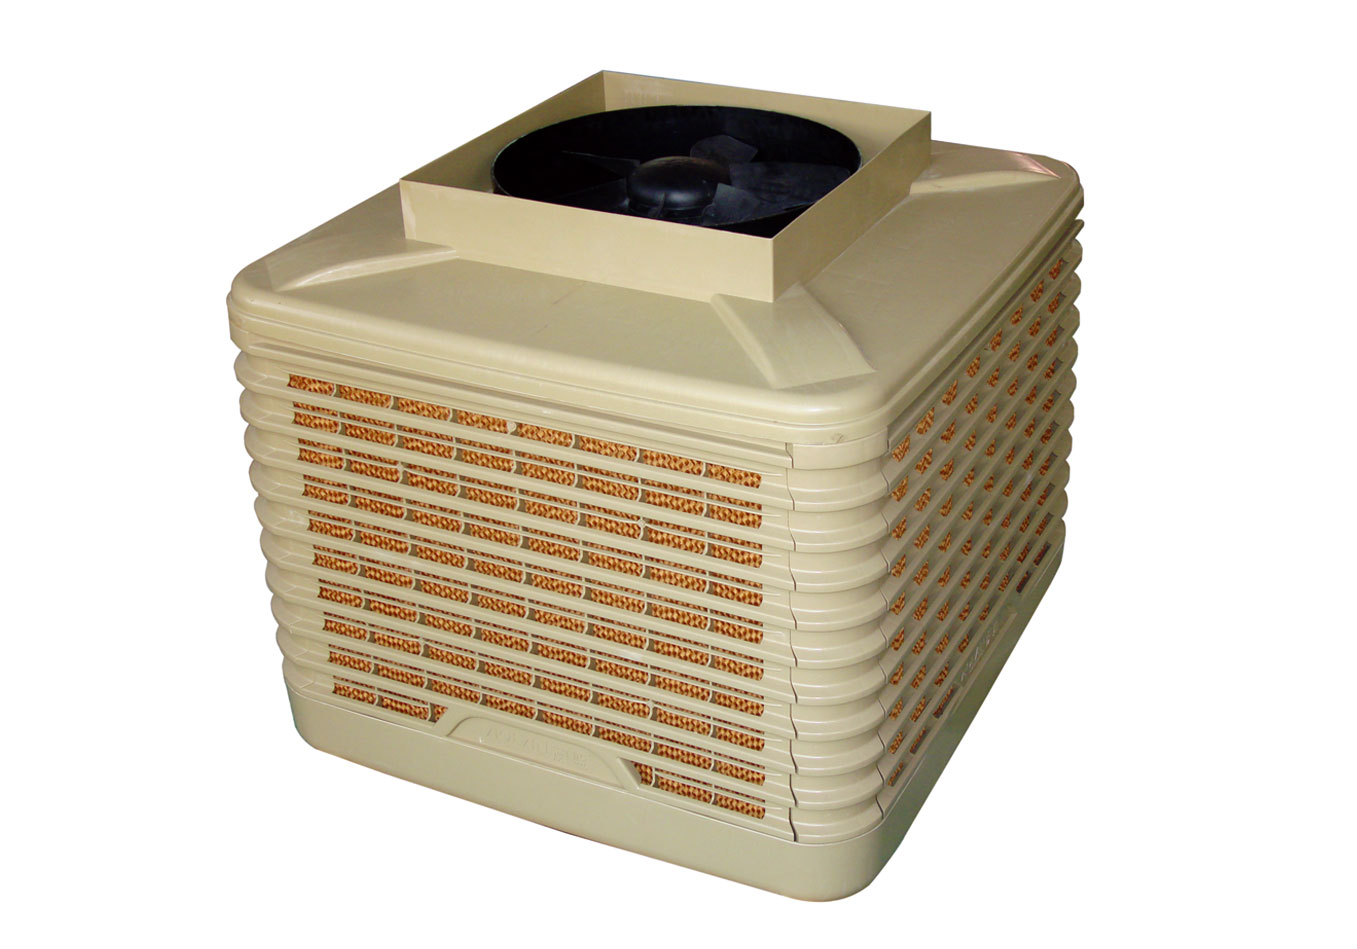 220V 50HZ 1 climatiseur de phase, refroidisseur d'air évaporatif, refroidisseurs d'air environnementaux de l'eau pour le centre commercial